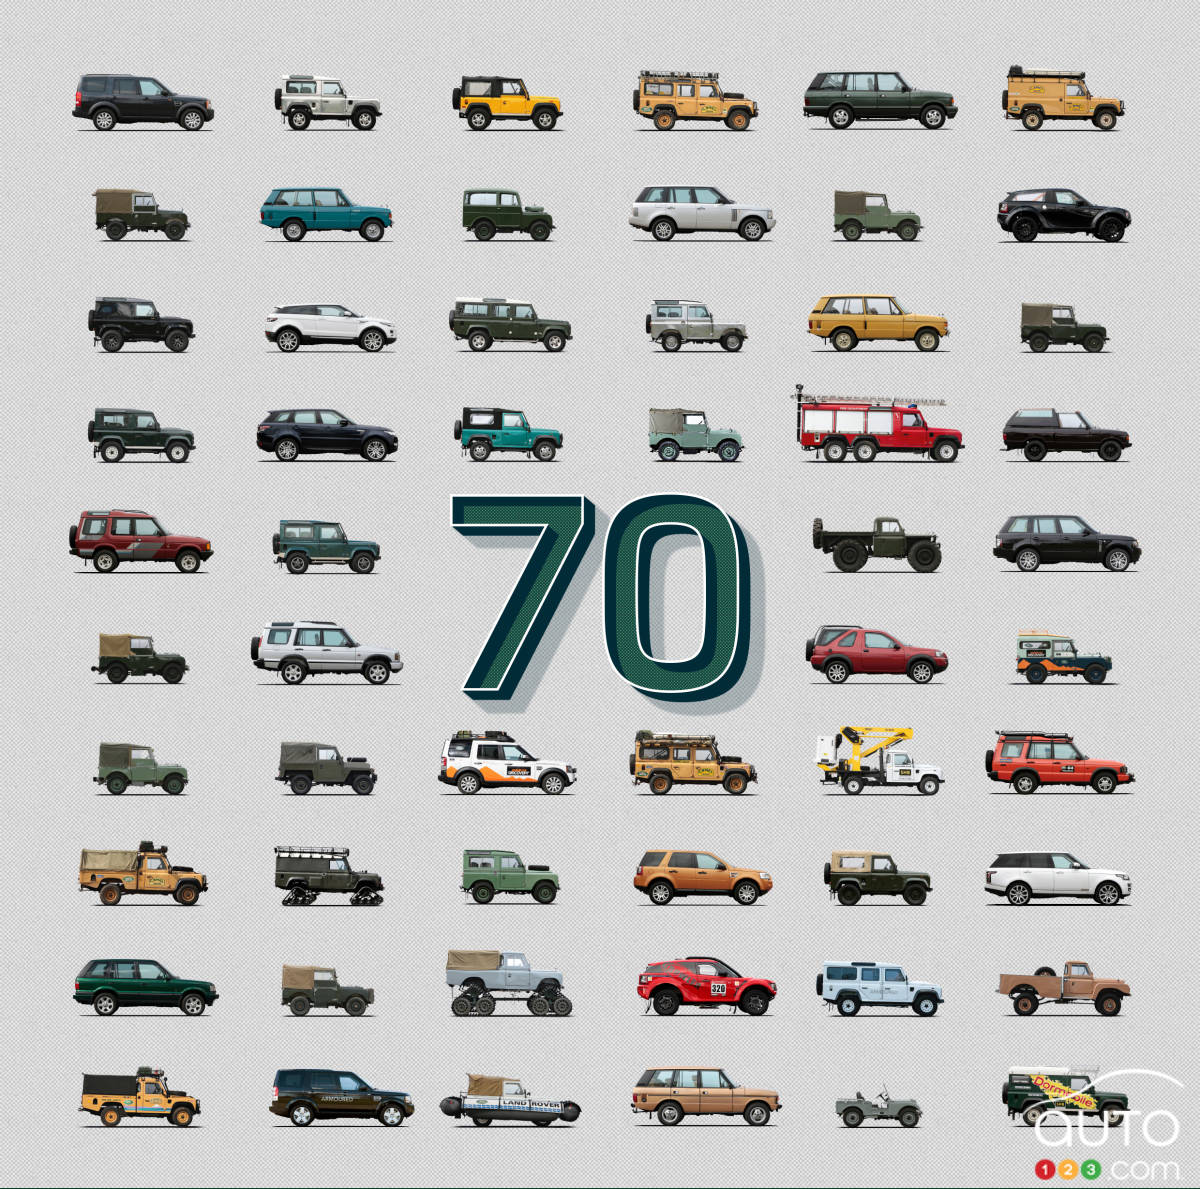 Land Rover fête ses 70 ans en direct sur le Web